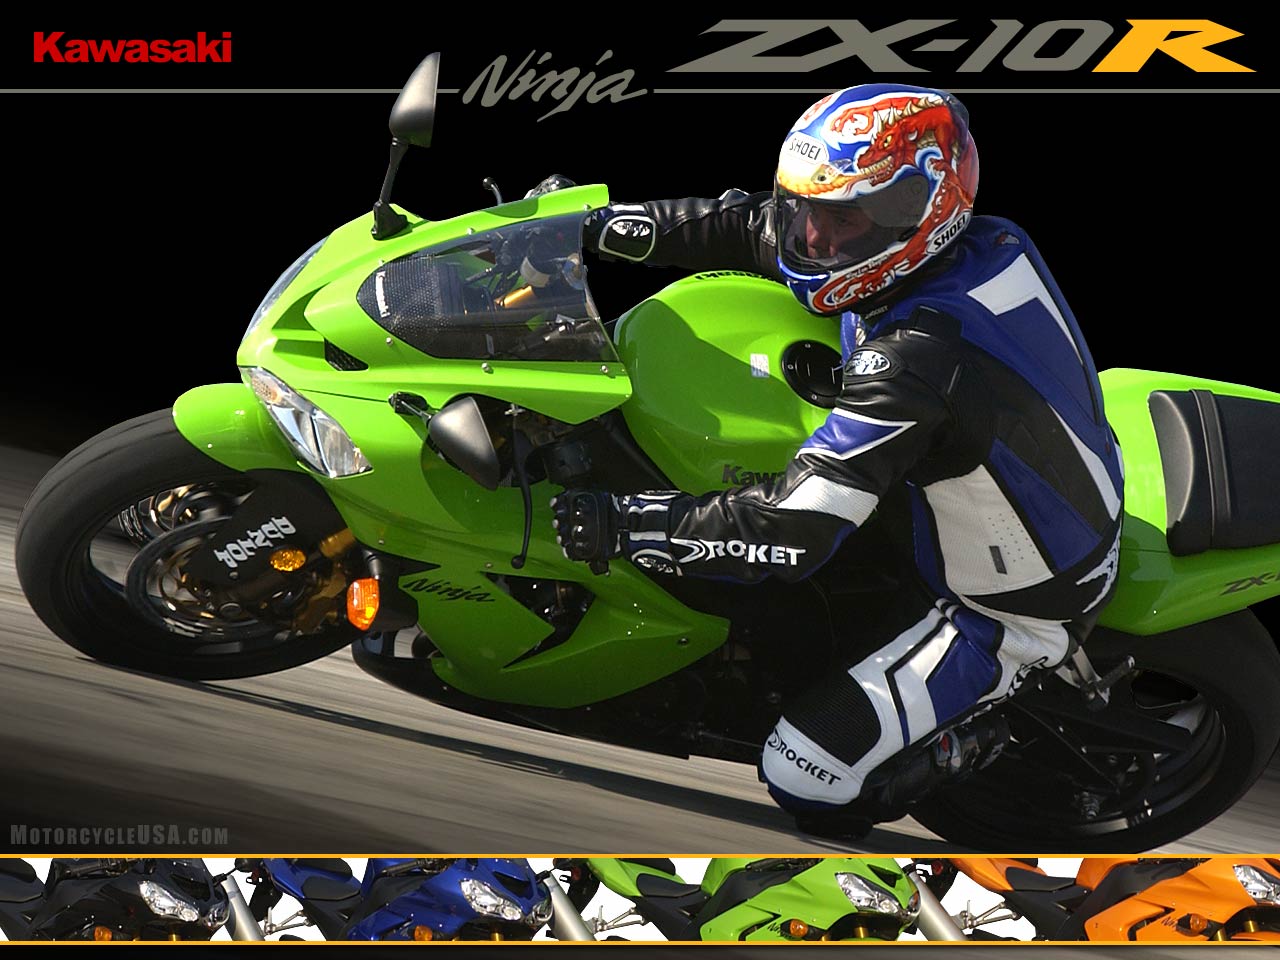 2004款川崎Ninja ZX-10R摩托车图片1